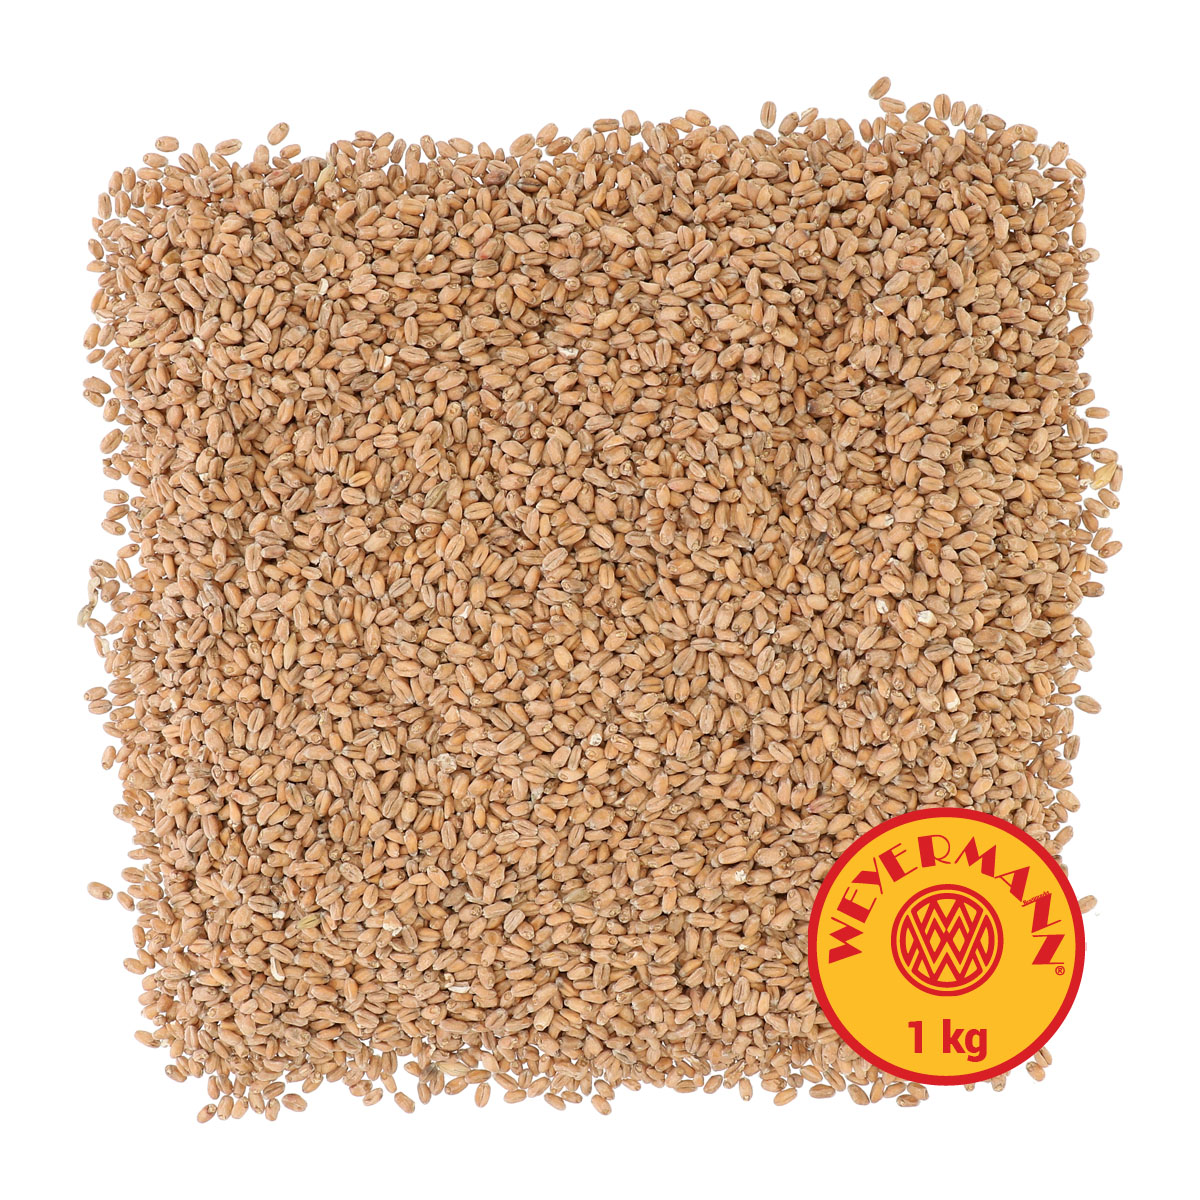 Weyermann® Pale Wheat 1 kg